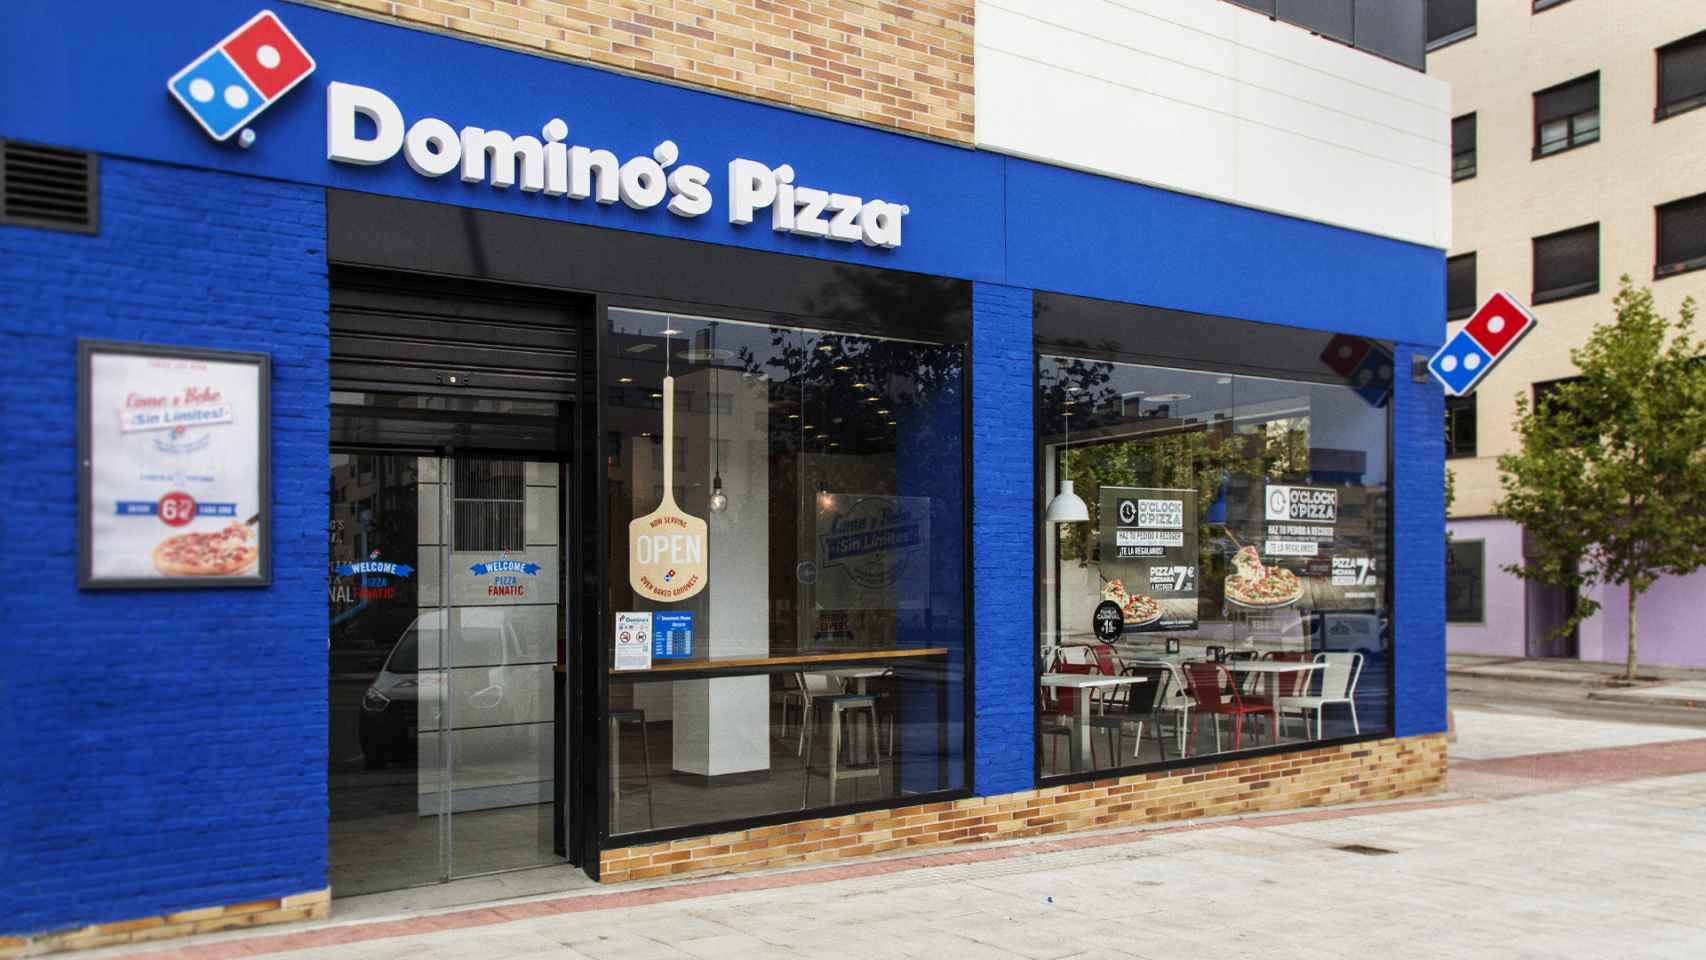 Establecimiento de Domino's Pizza.